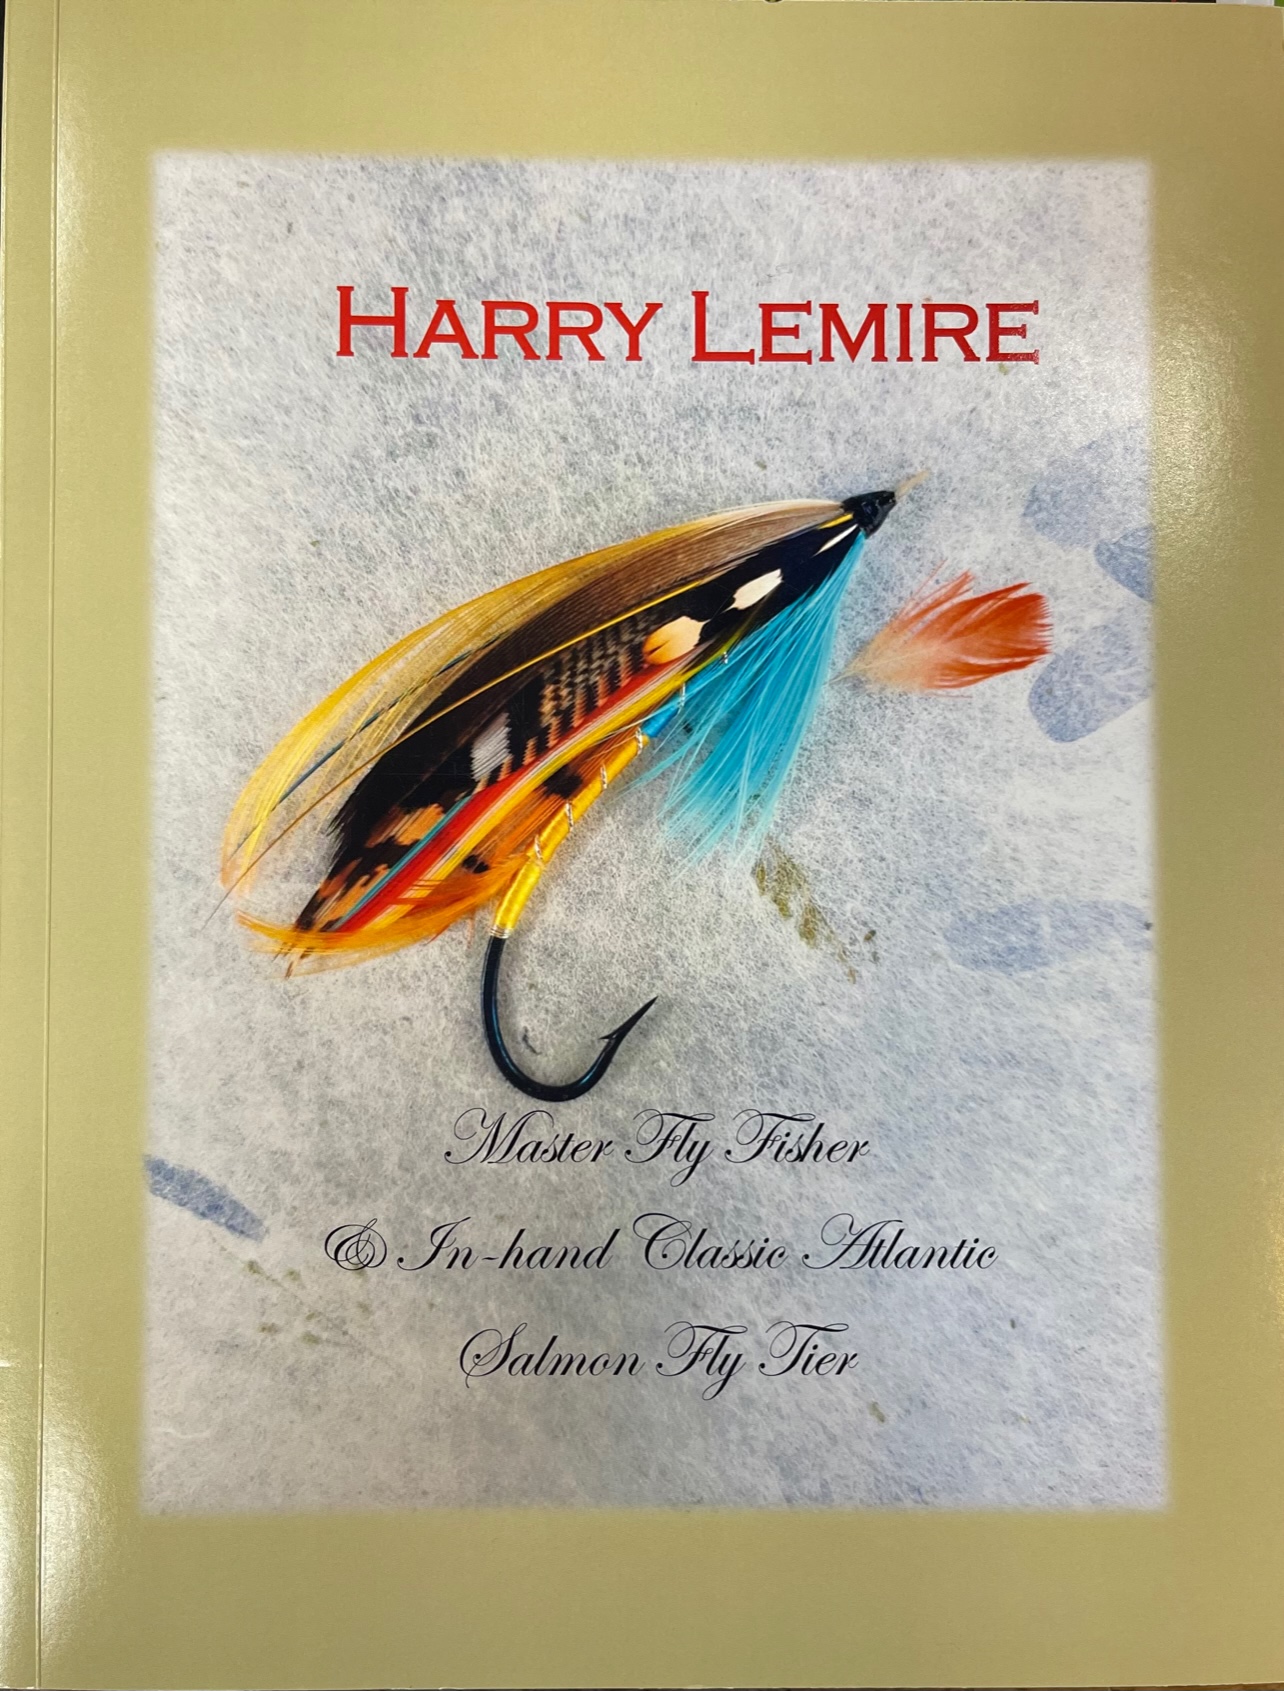 Harry Lemire